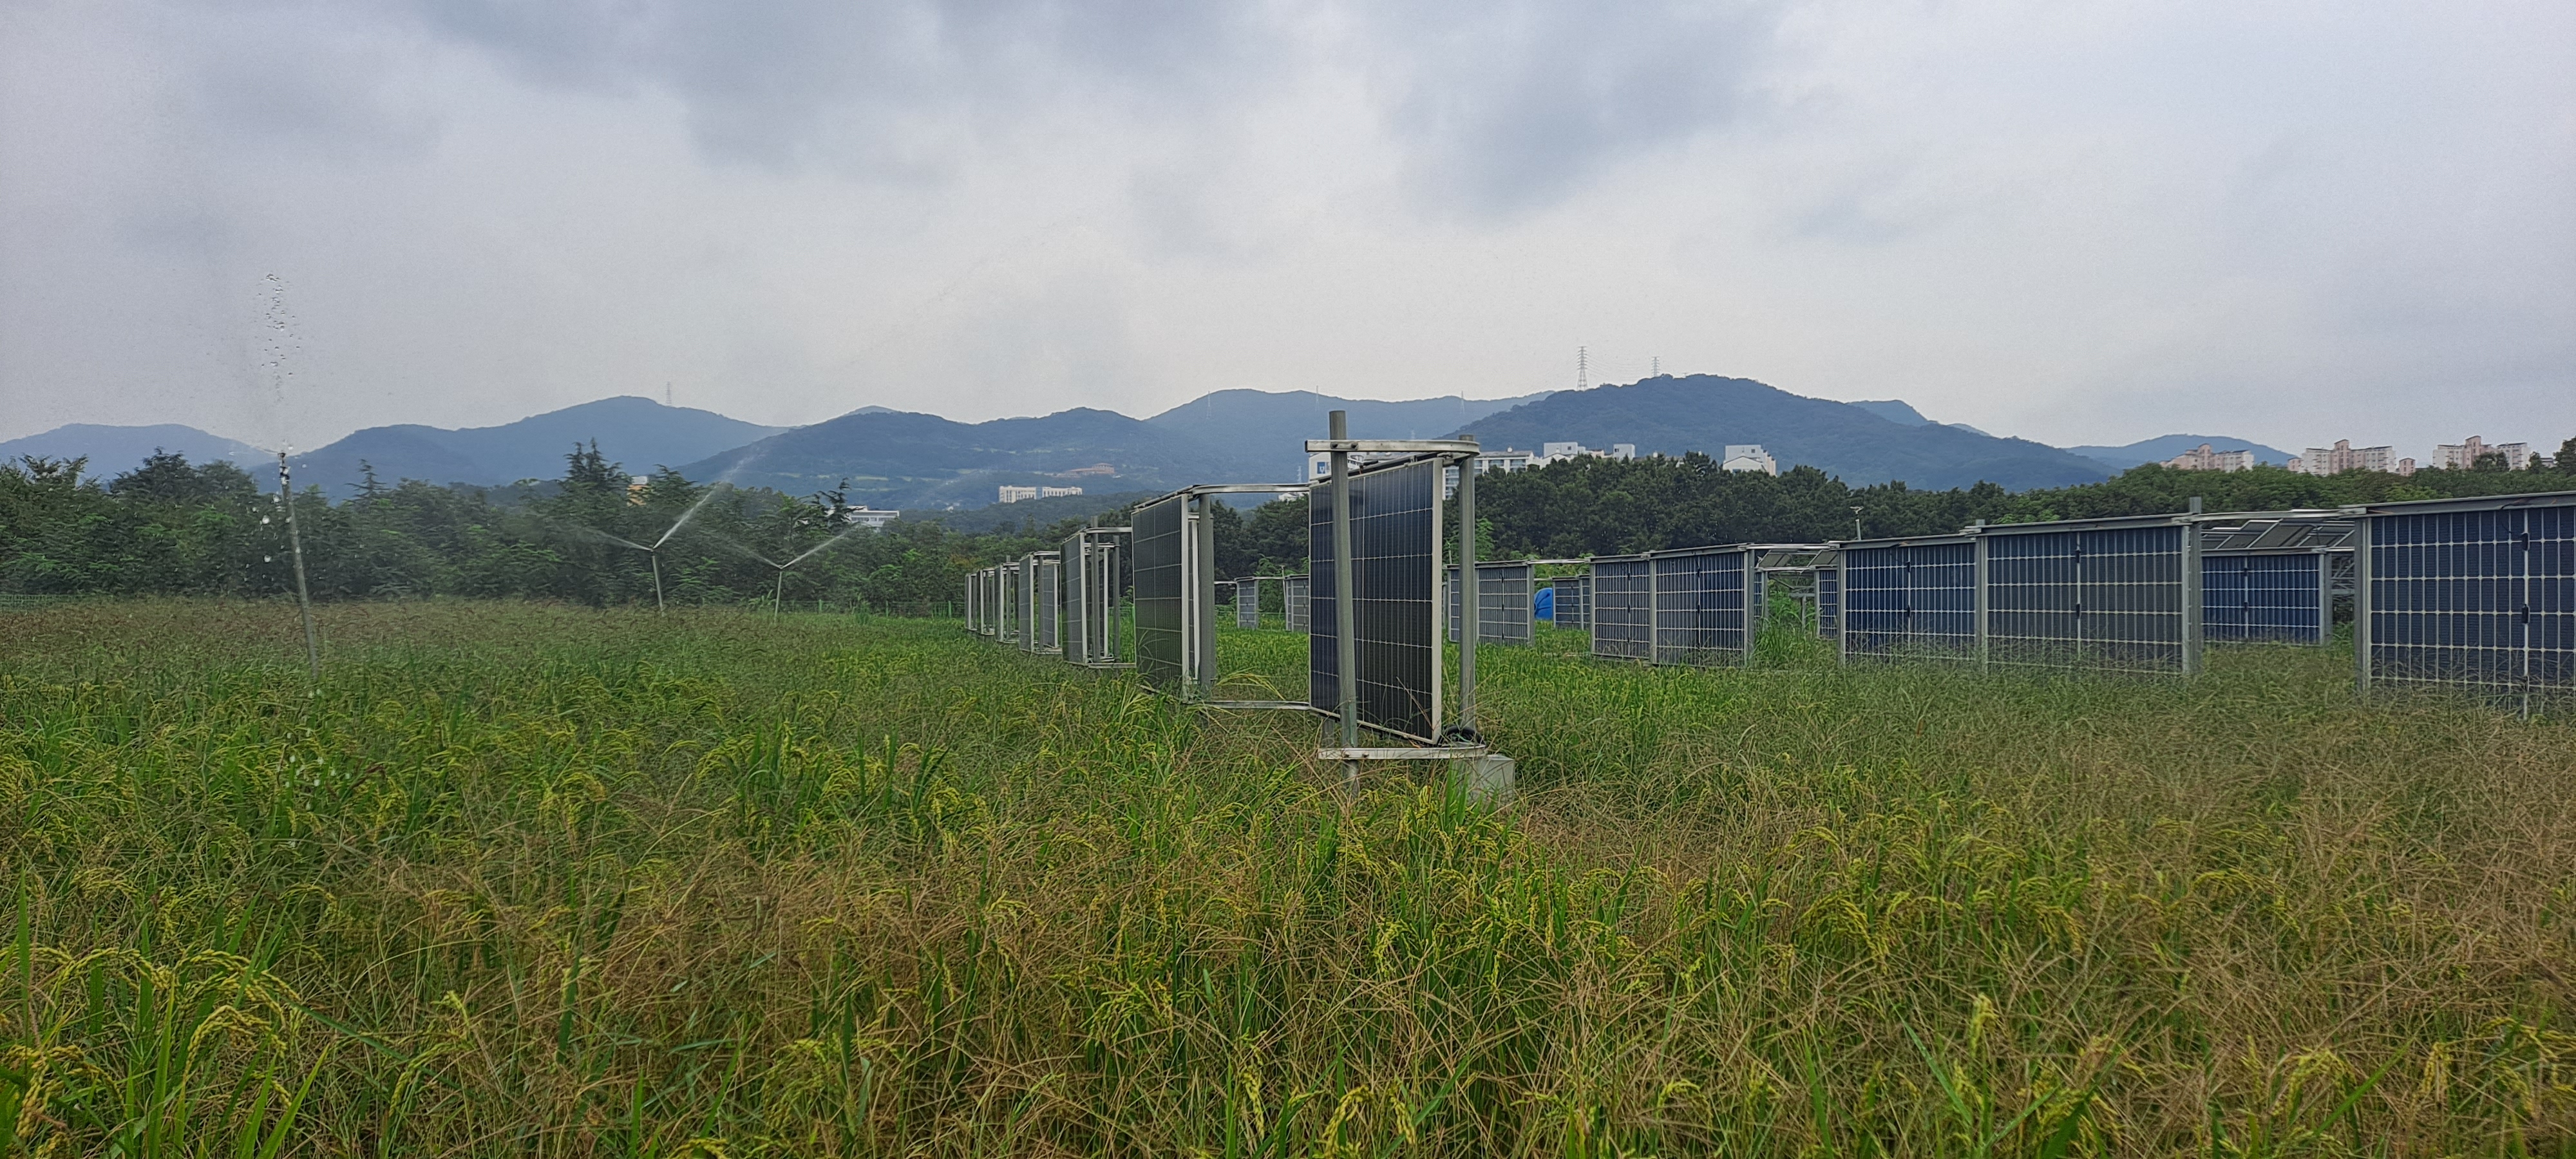 영남대 영농형태양광 실증단지에 수직형 태양광 모듈이 설치된 모습